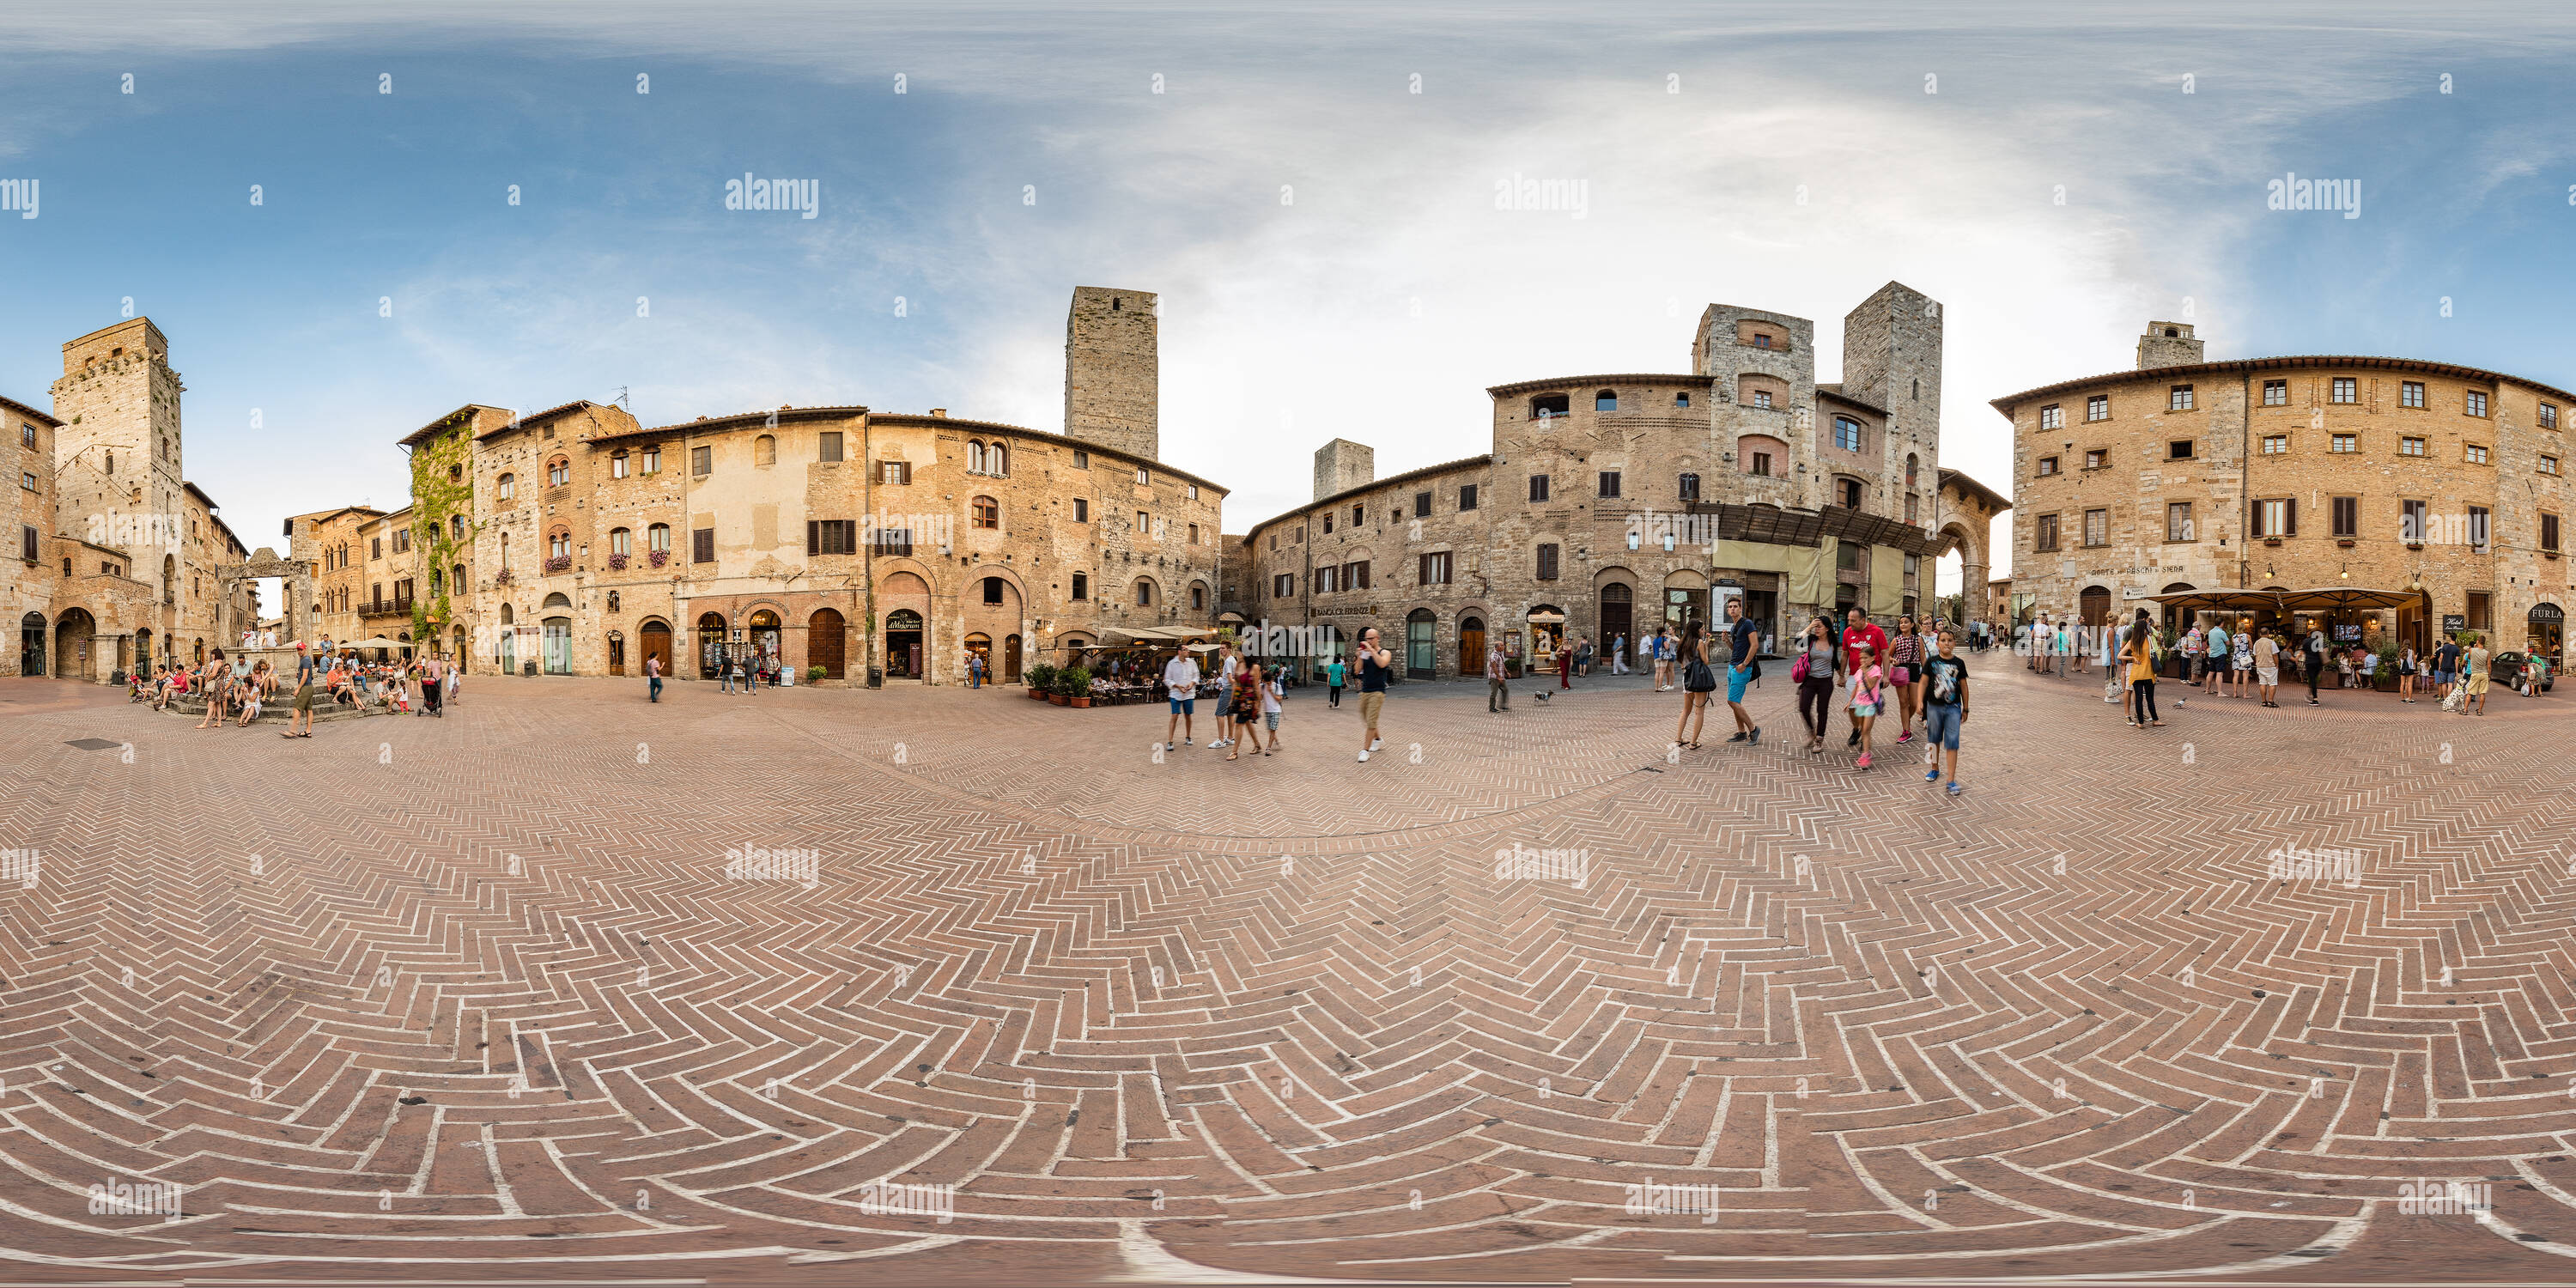 Vue panoramique à 360° de La Piazza della Cisterna. L'Italie.